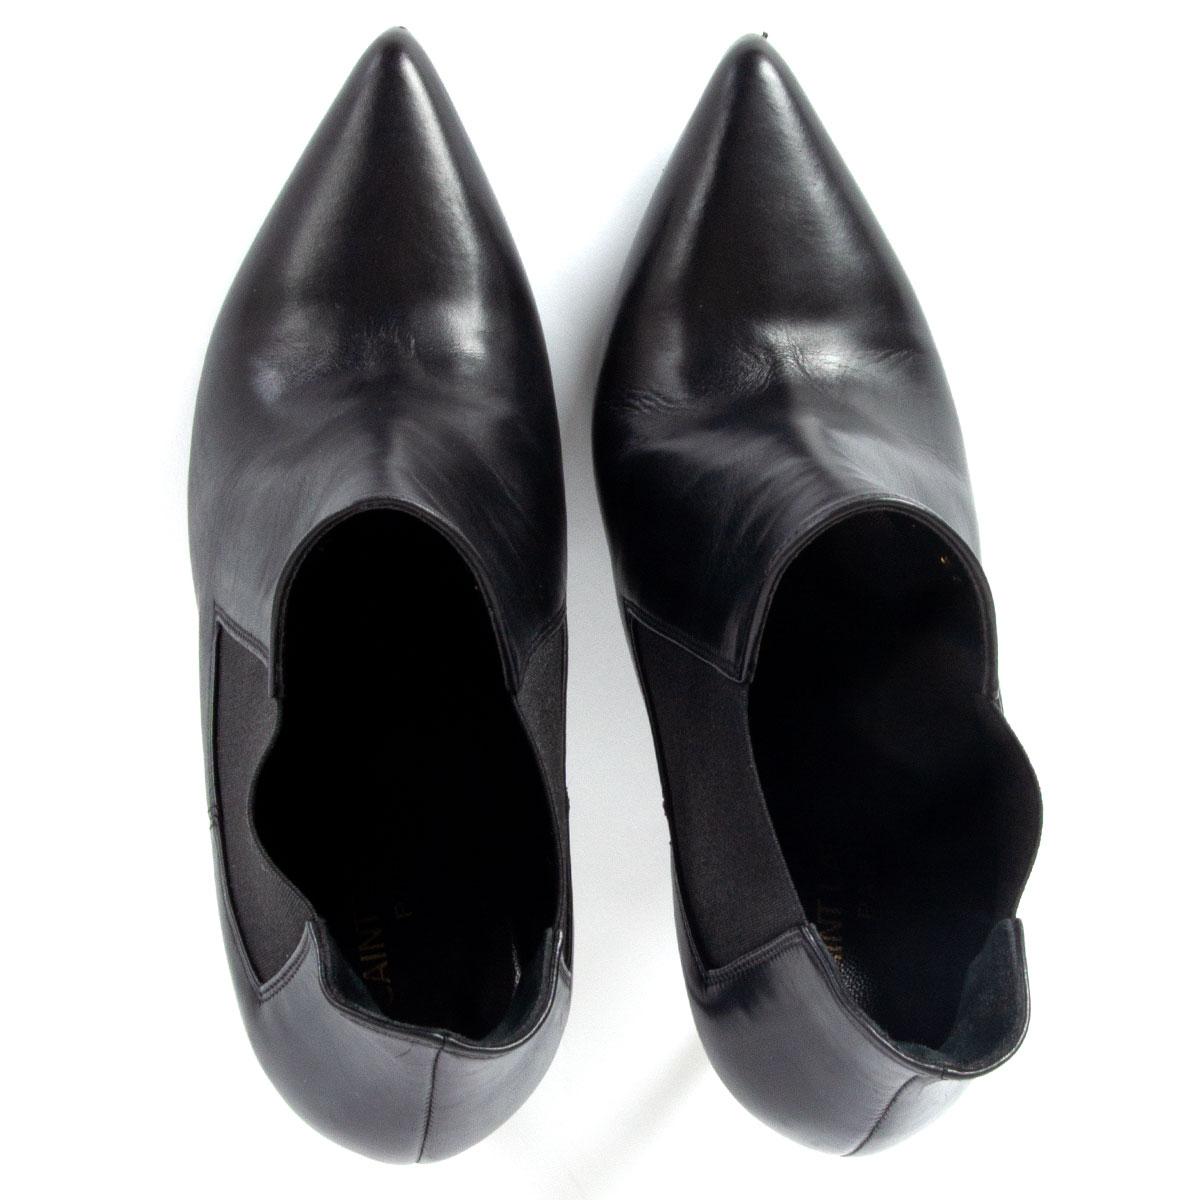 Black SAINT LAURENT black leather CLASSIC PARIS 110 Ankle Boots Shoes 37